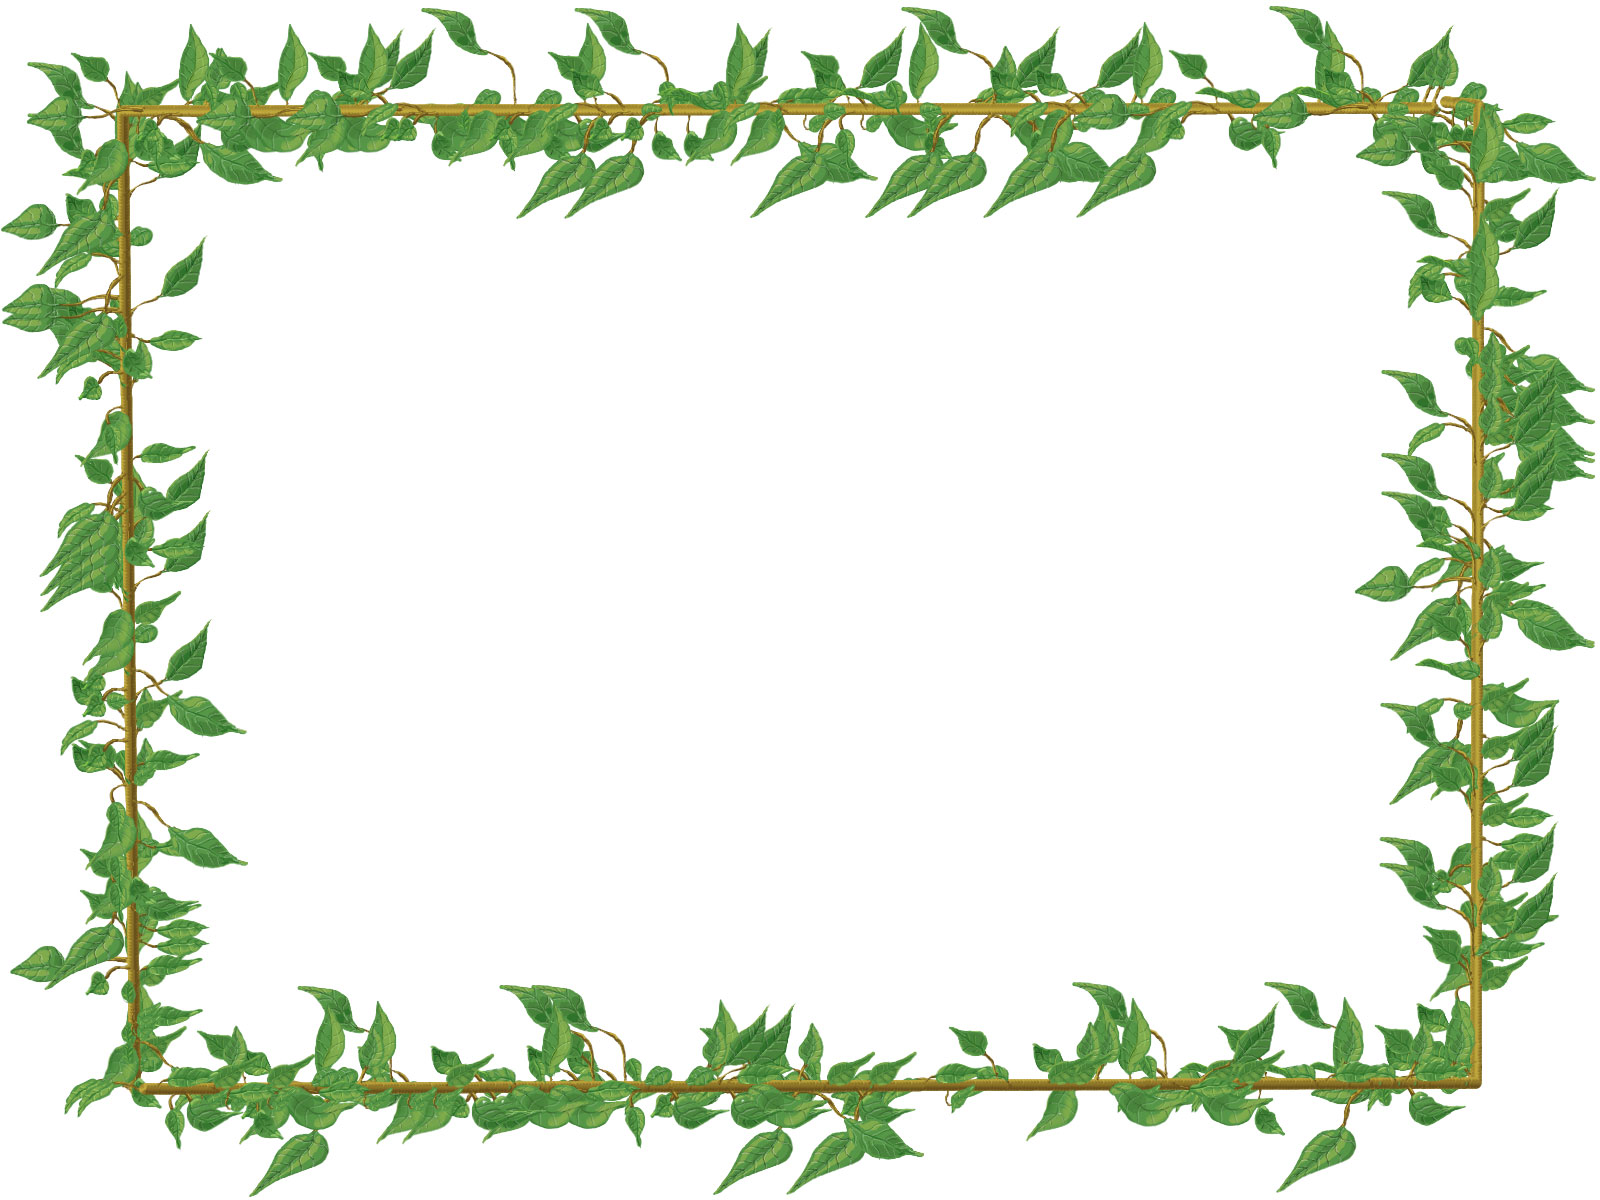 葉っぱや草木の写真 フリー素材 画像no 1285 からまる葉 緑